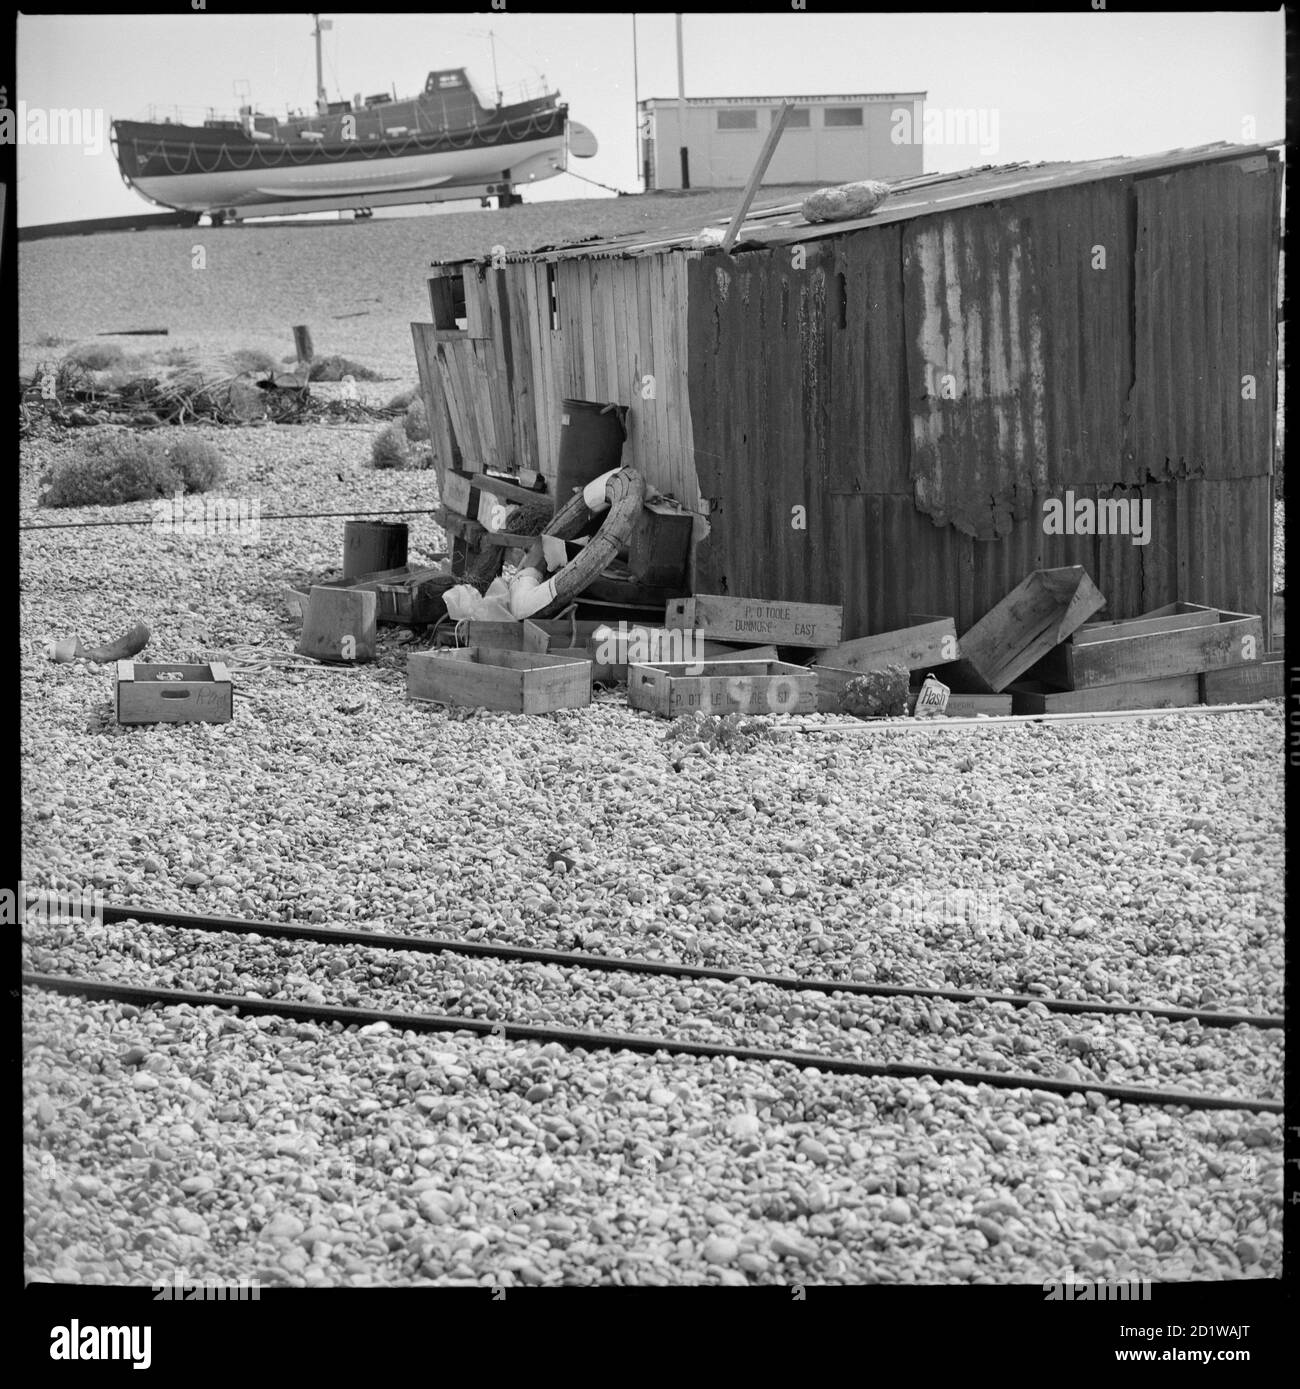 Dungeness, Lydd, Shepway, Kent. Eine Hütte am Strand von Dungeness mit dem RNLI Rettungsboot im Hintergrund. Stockfoto